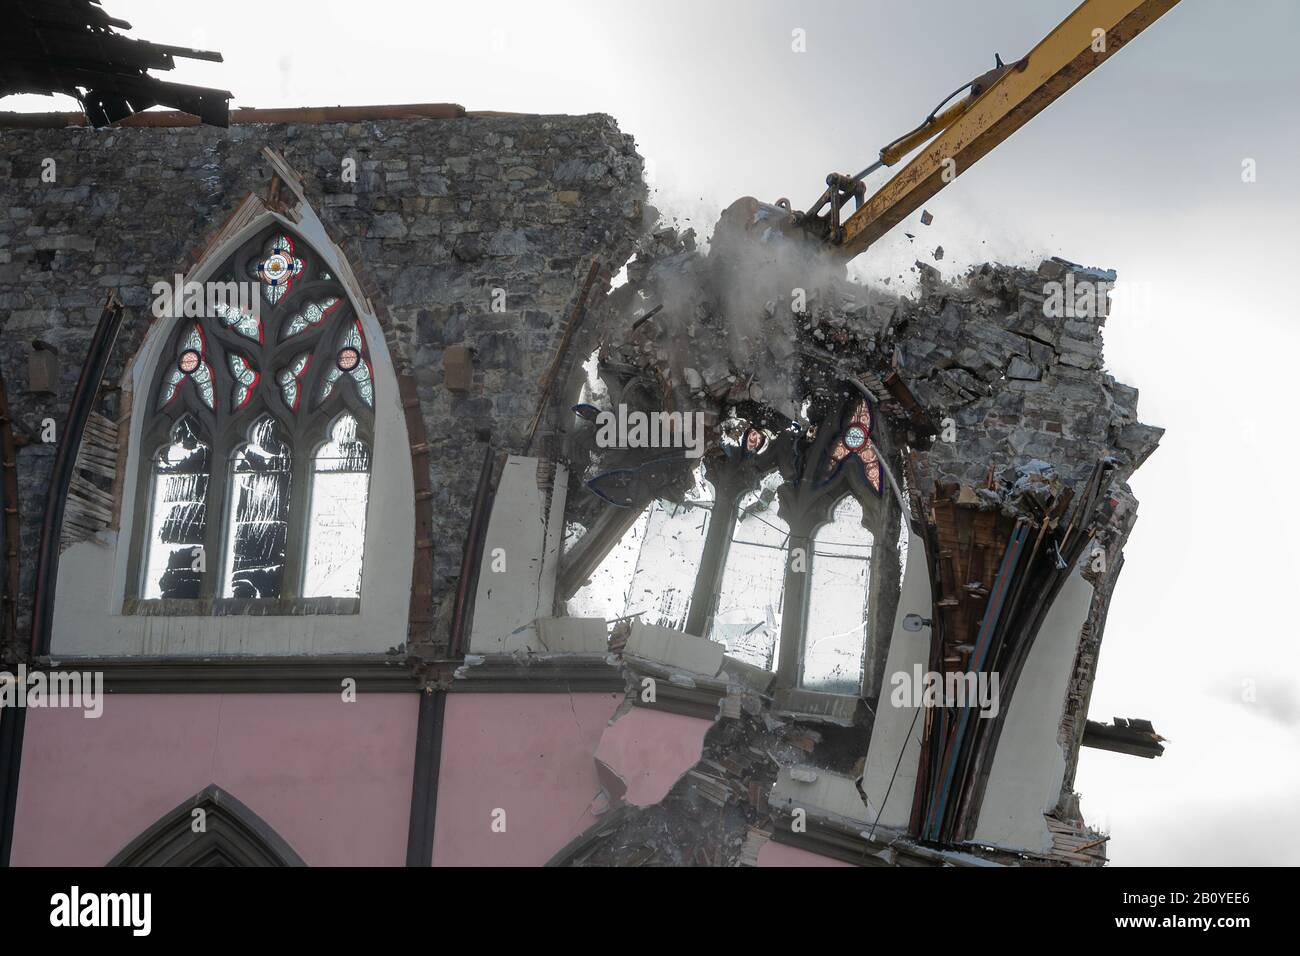 Action-Schuss eines großen Baggerladers, der eine gothische Kirche abreißen lässt. Trümmer fliegen um eine Wand und ein Fenster, während die Maschine sie herunterzieht. Übergiebeltem Himmel. Stockfoto